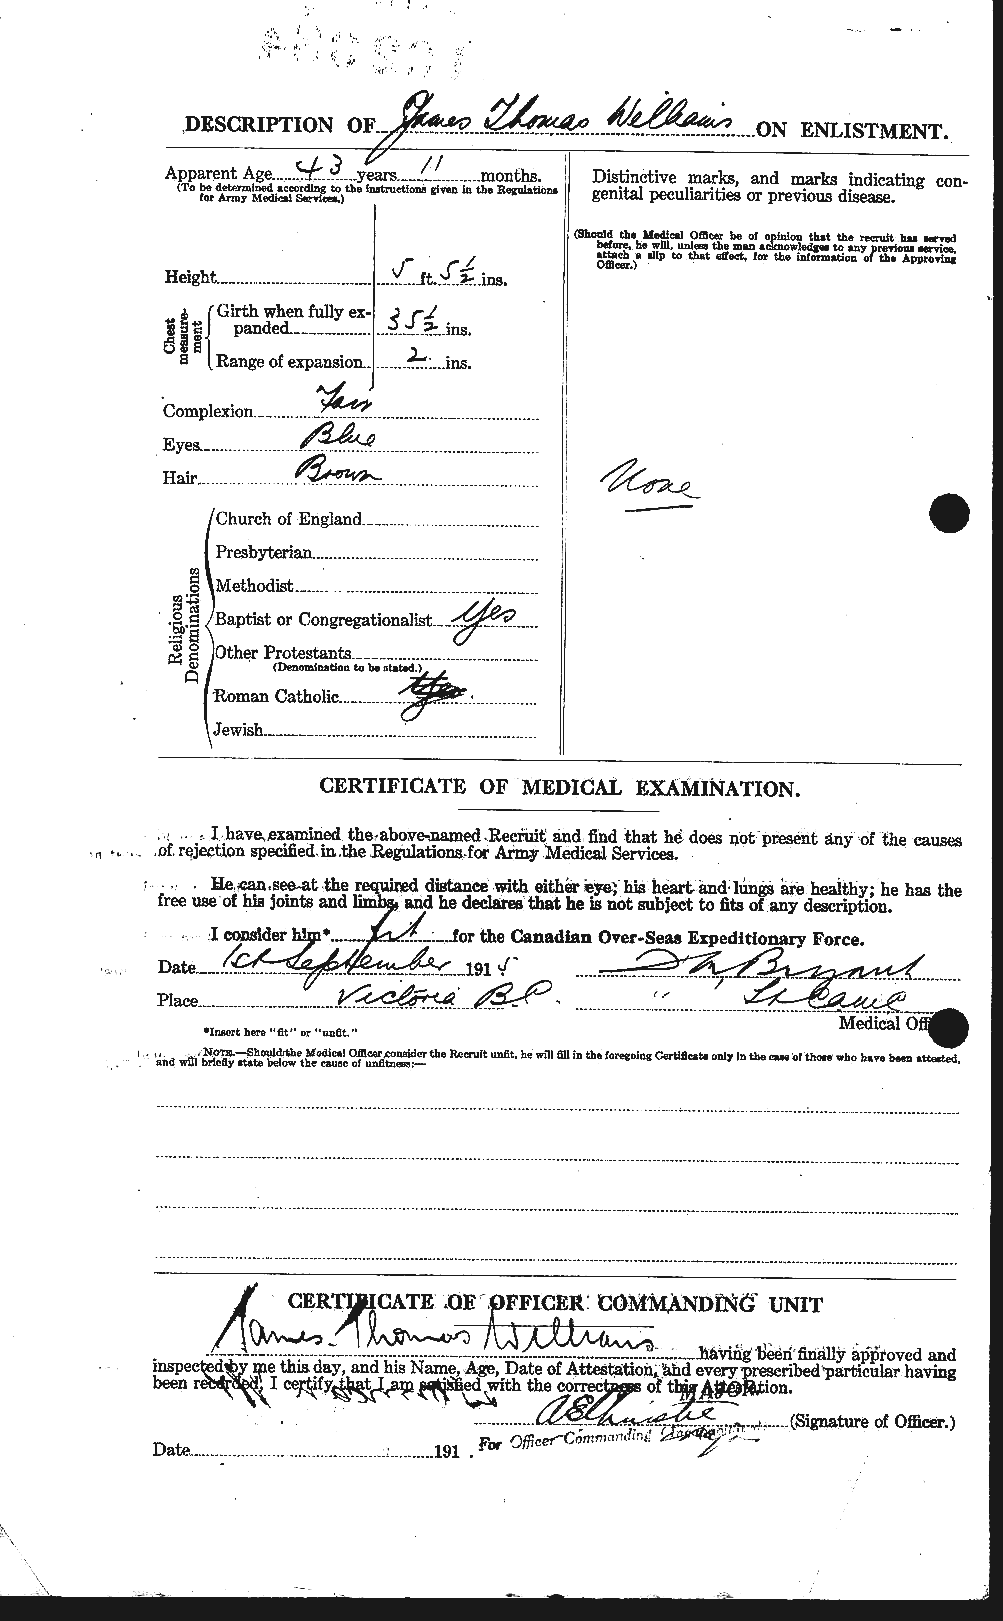 Dossiers du Personnel de la Première Guerre mondiale - CEC 677561b